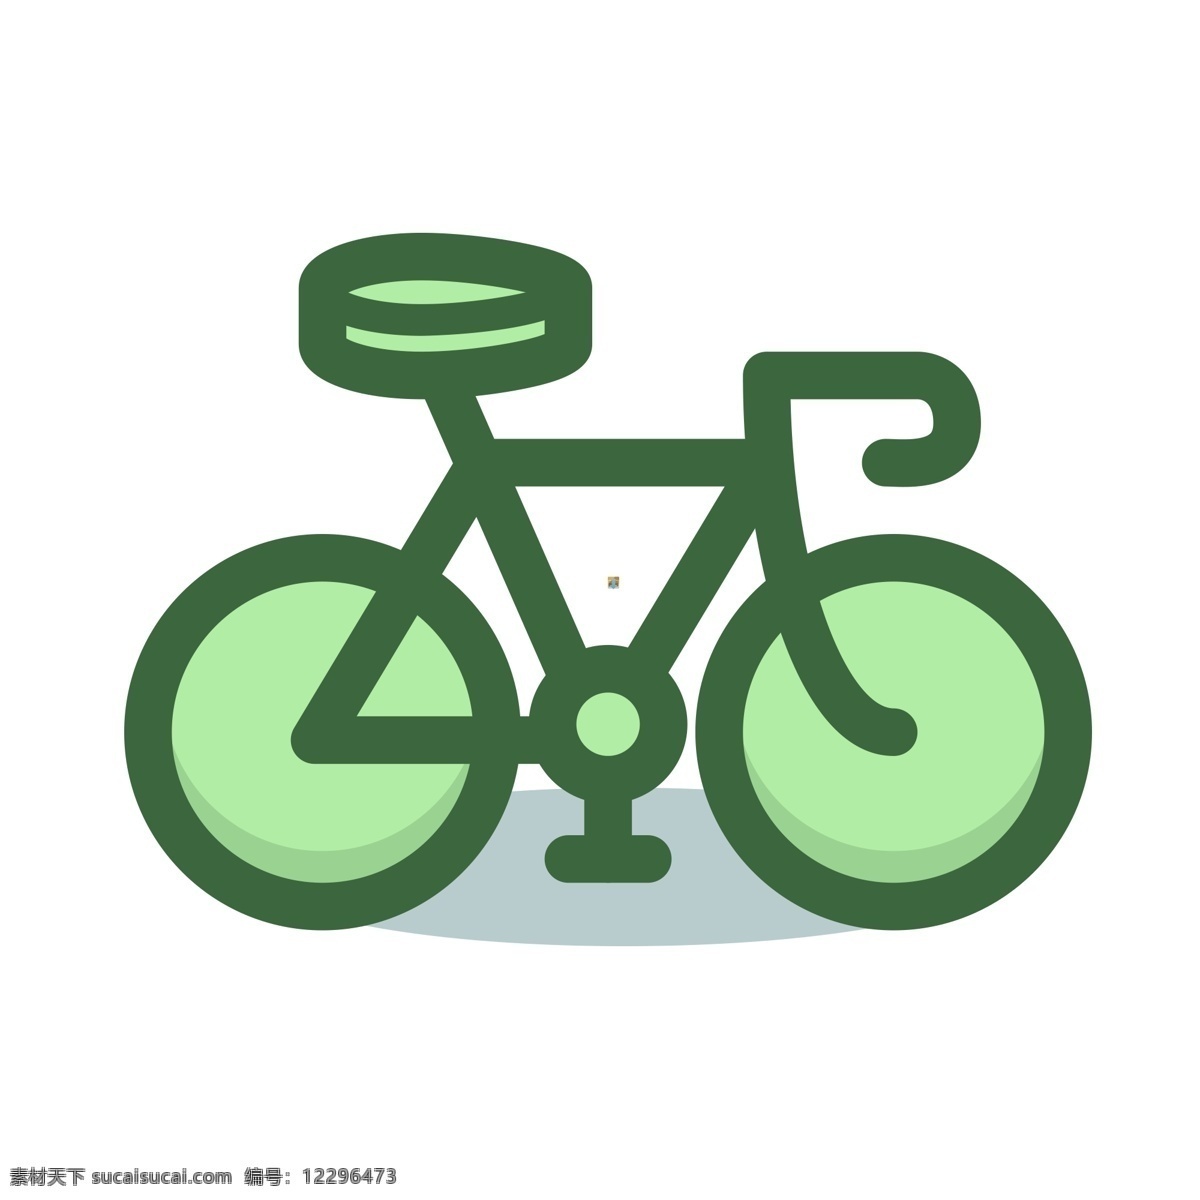 扁平化自行车 自行车 扁平化ui ui图标 手机图标 界面ui 网页ui h5图标